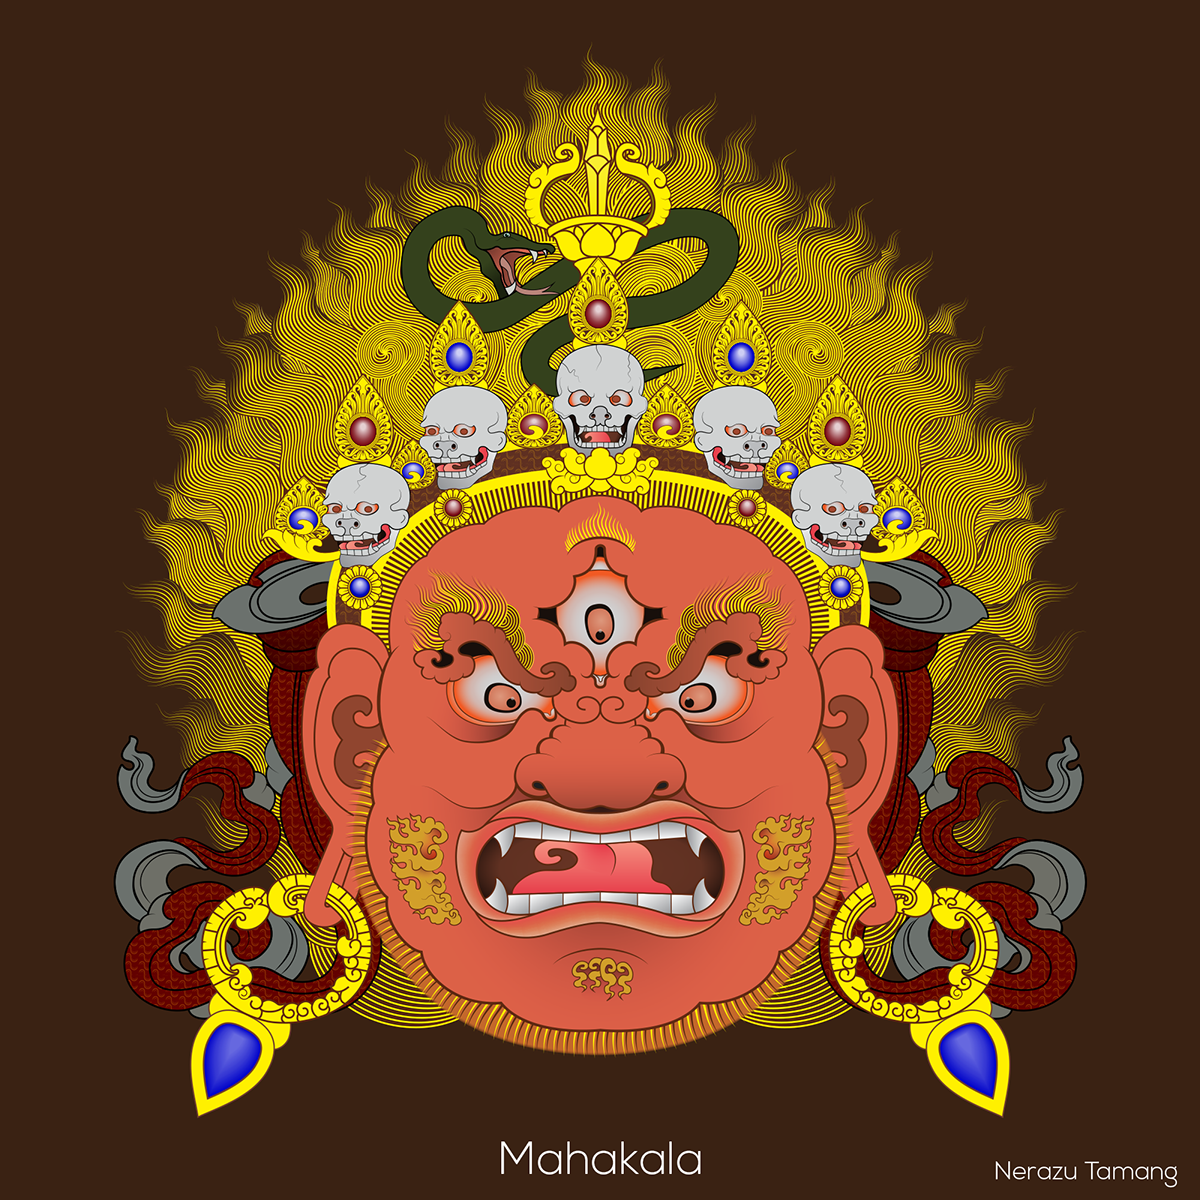 Mahakala Nepalese Art bhairab Nerazu Tibeatan thangka nepal dharmapala